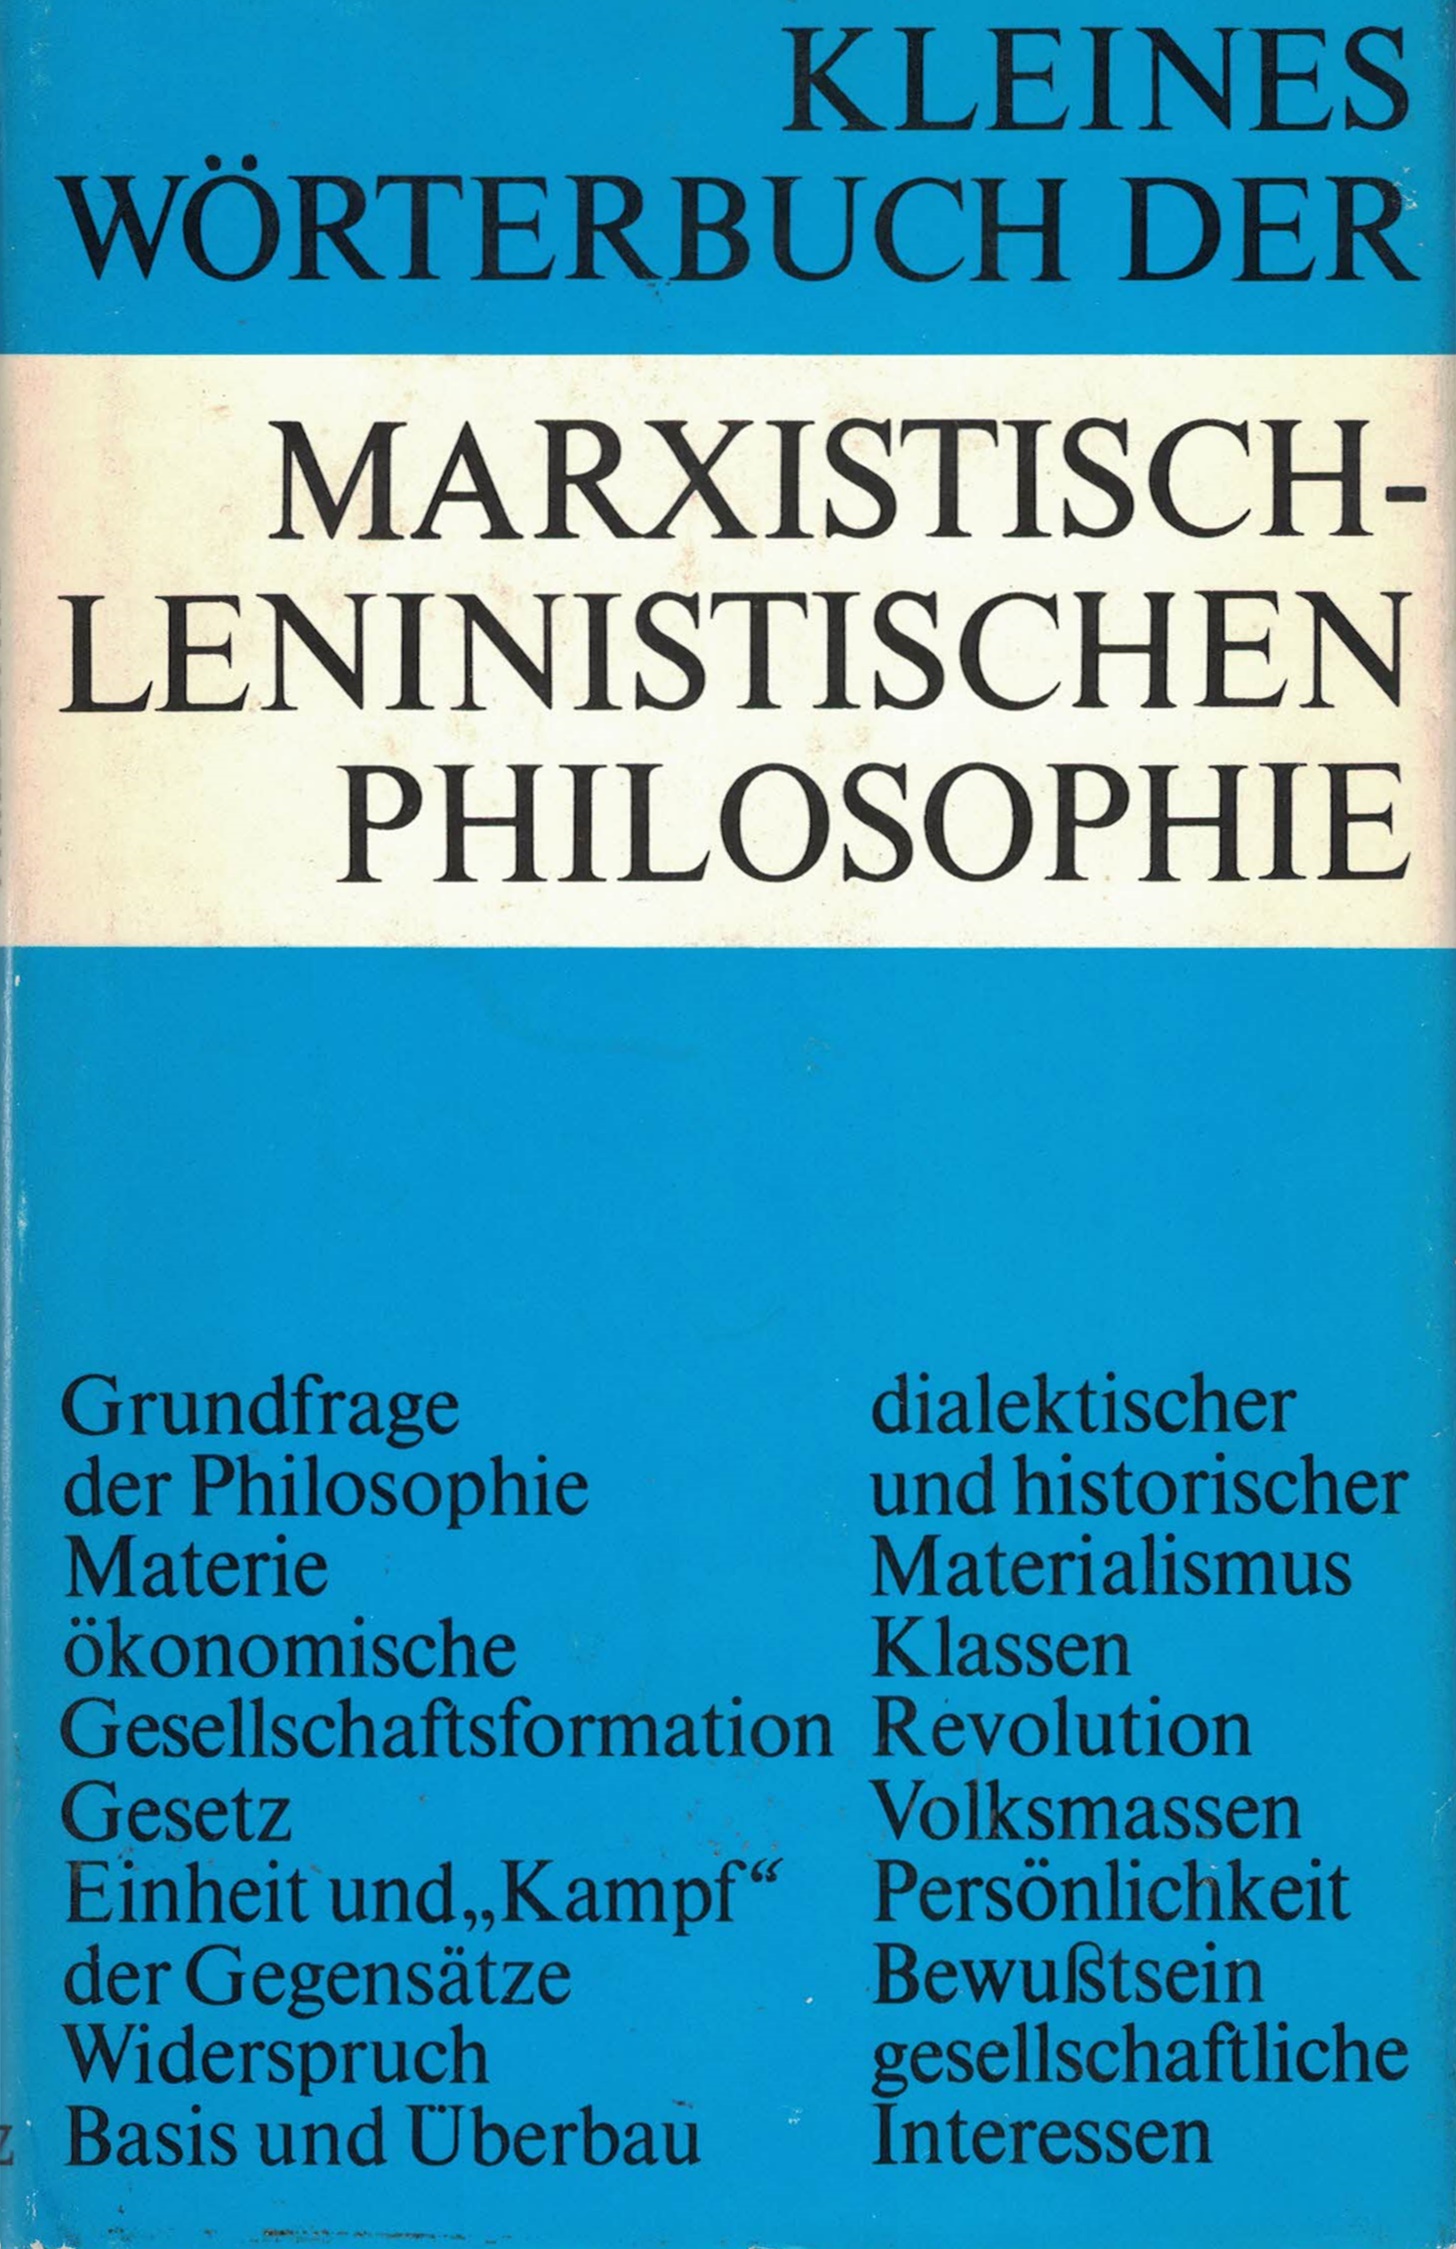 Kleines Wörterbuch der marxistisch-leninistischen Philosophie